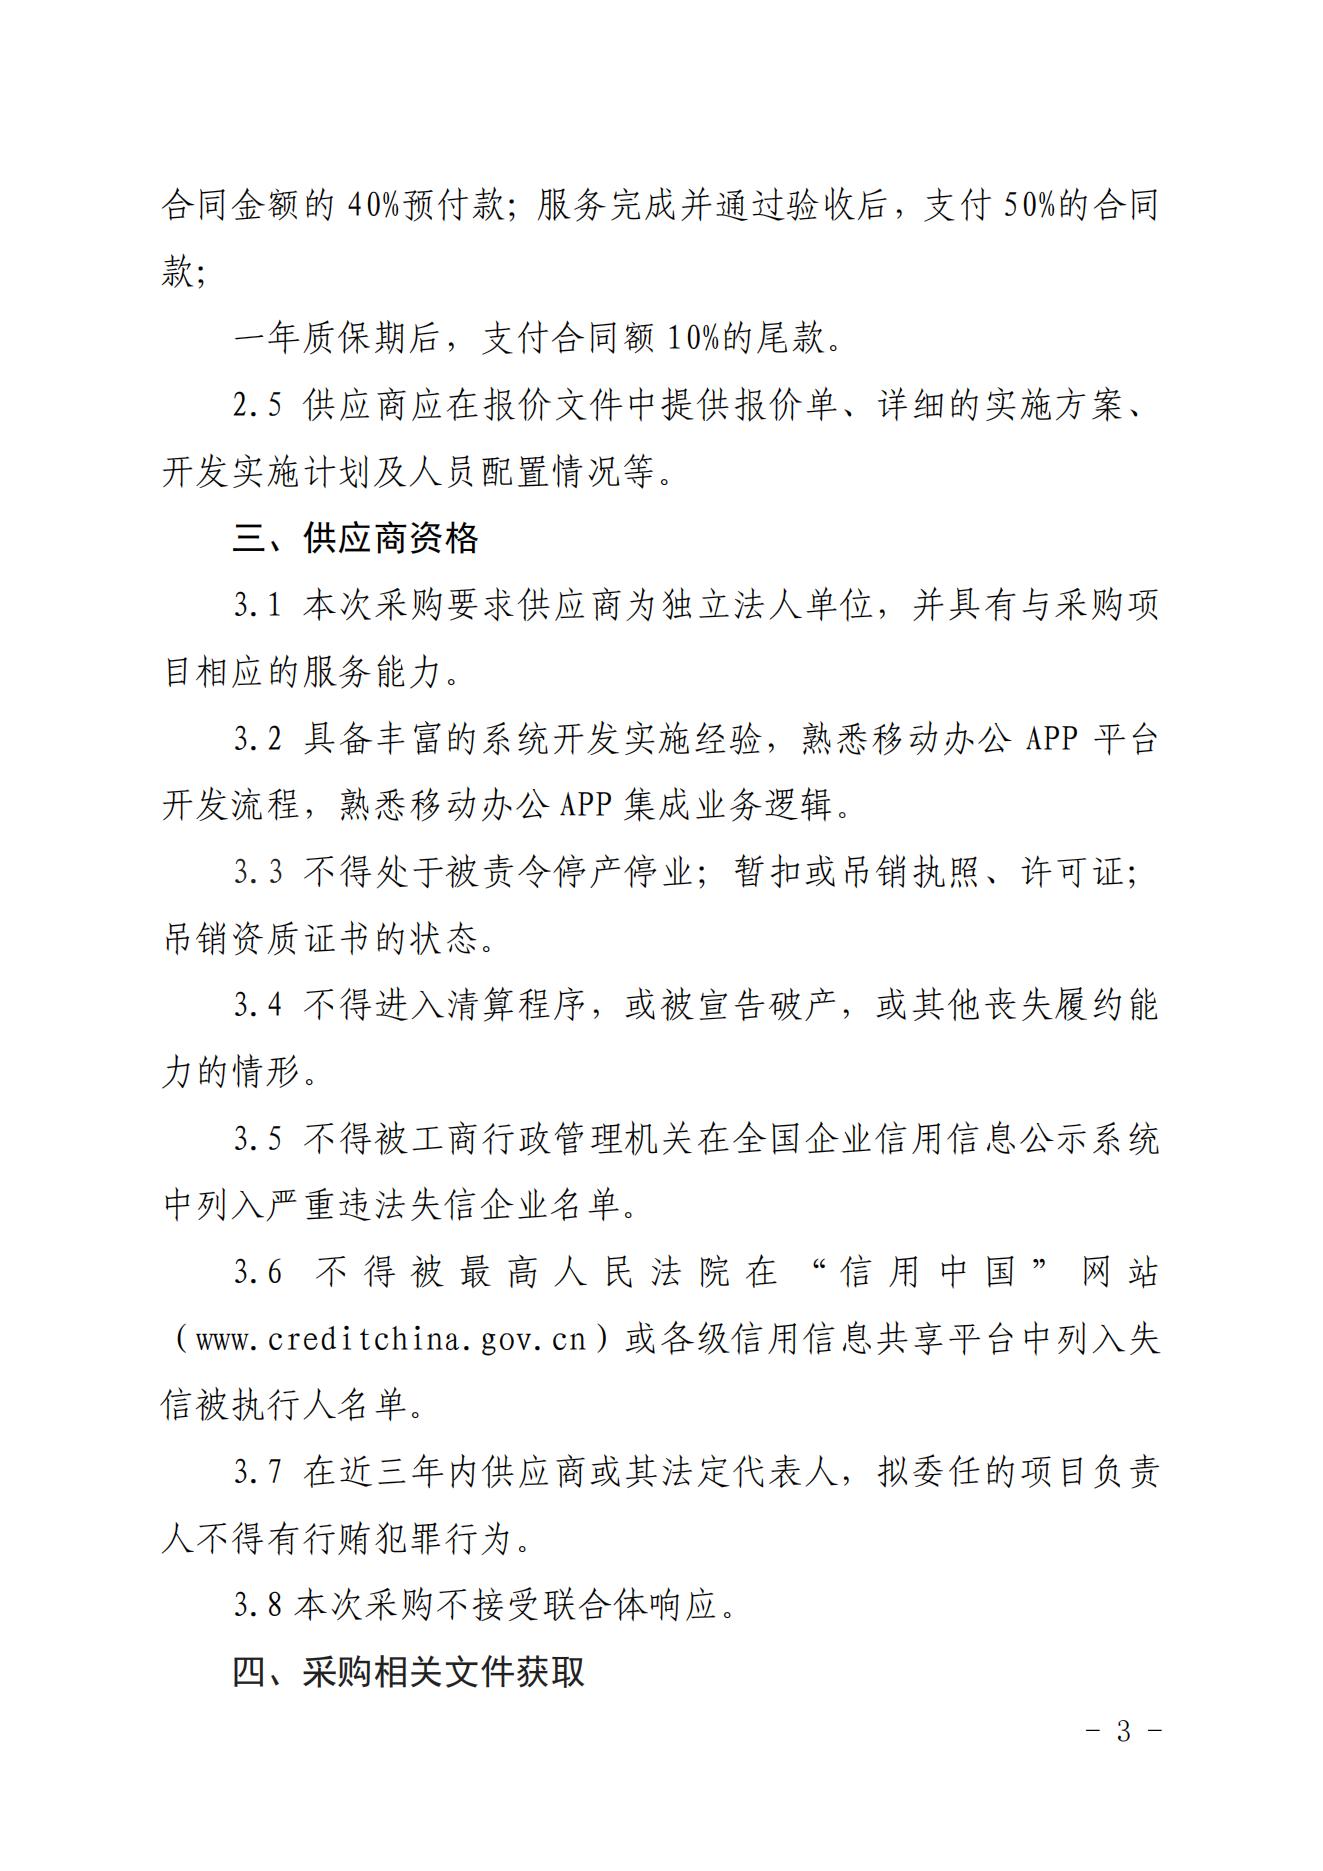 中国核能行业协会移动办公平台系统开发项目竞争性谈判公告 (2)_02.jpg